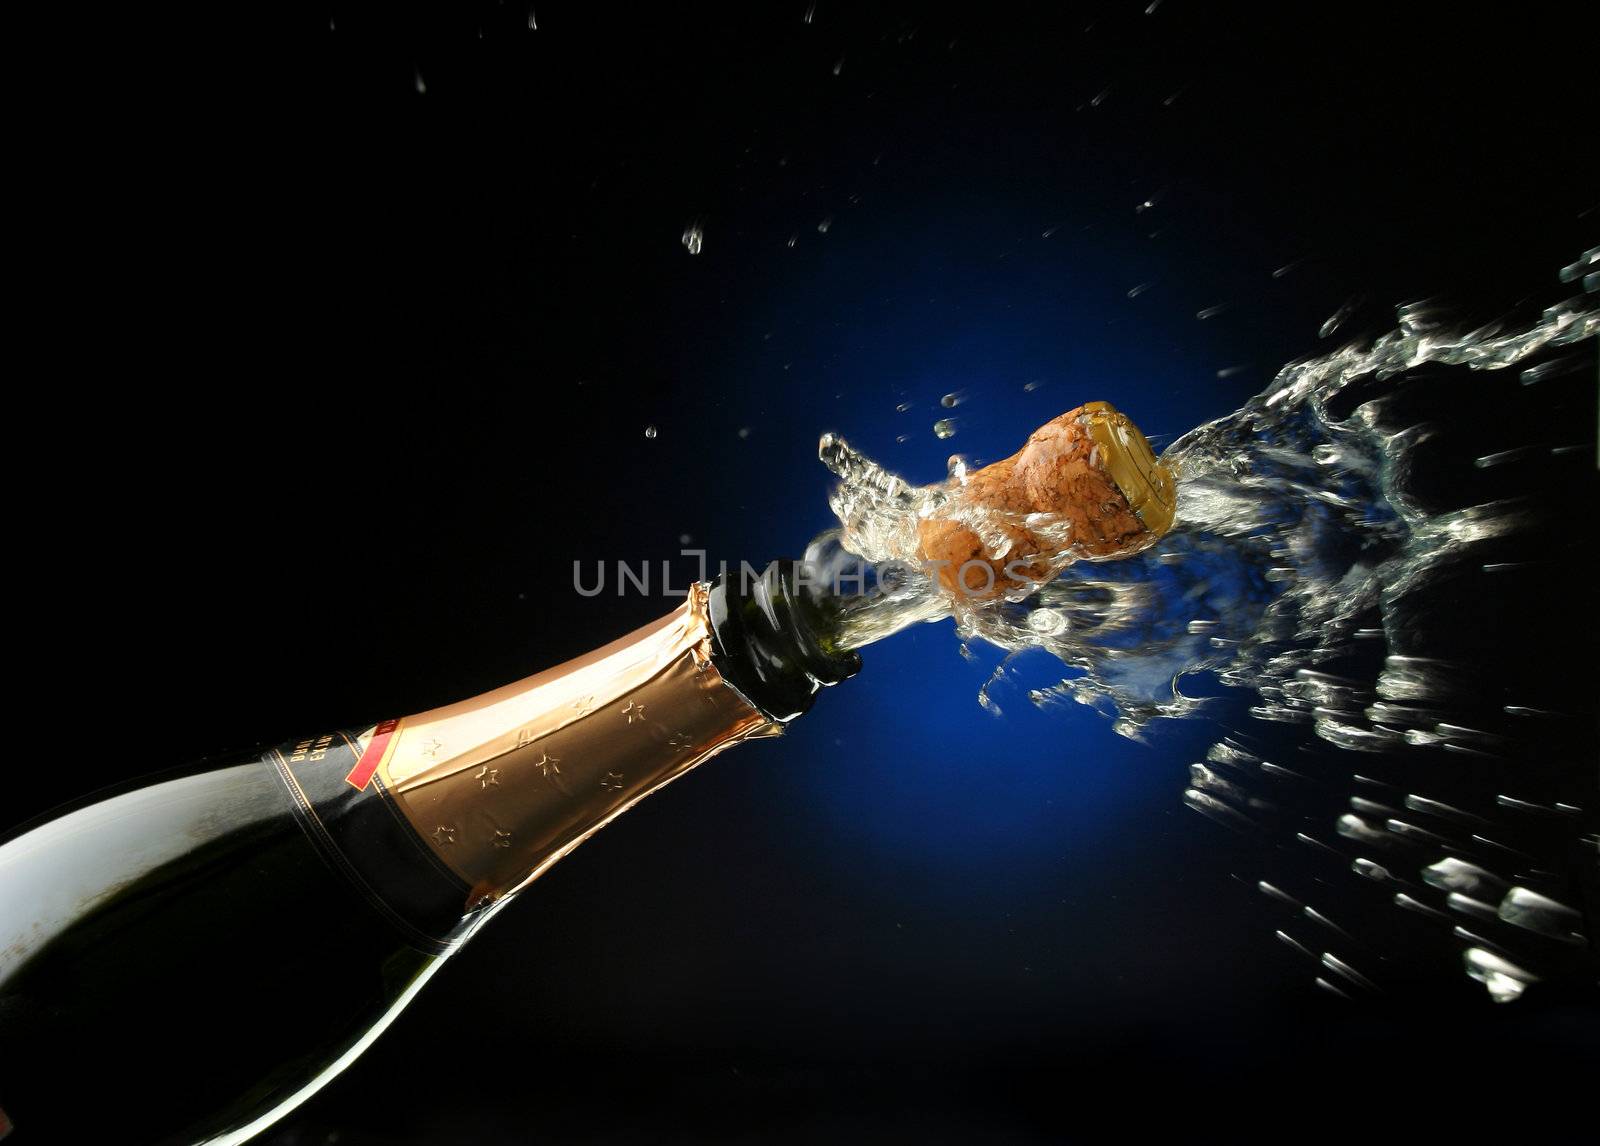 Champagne splash. Bottle and cork, celebration time 